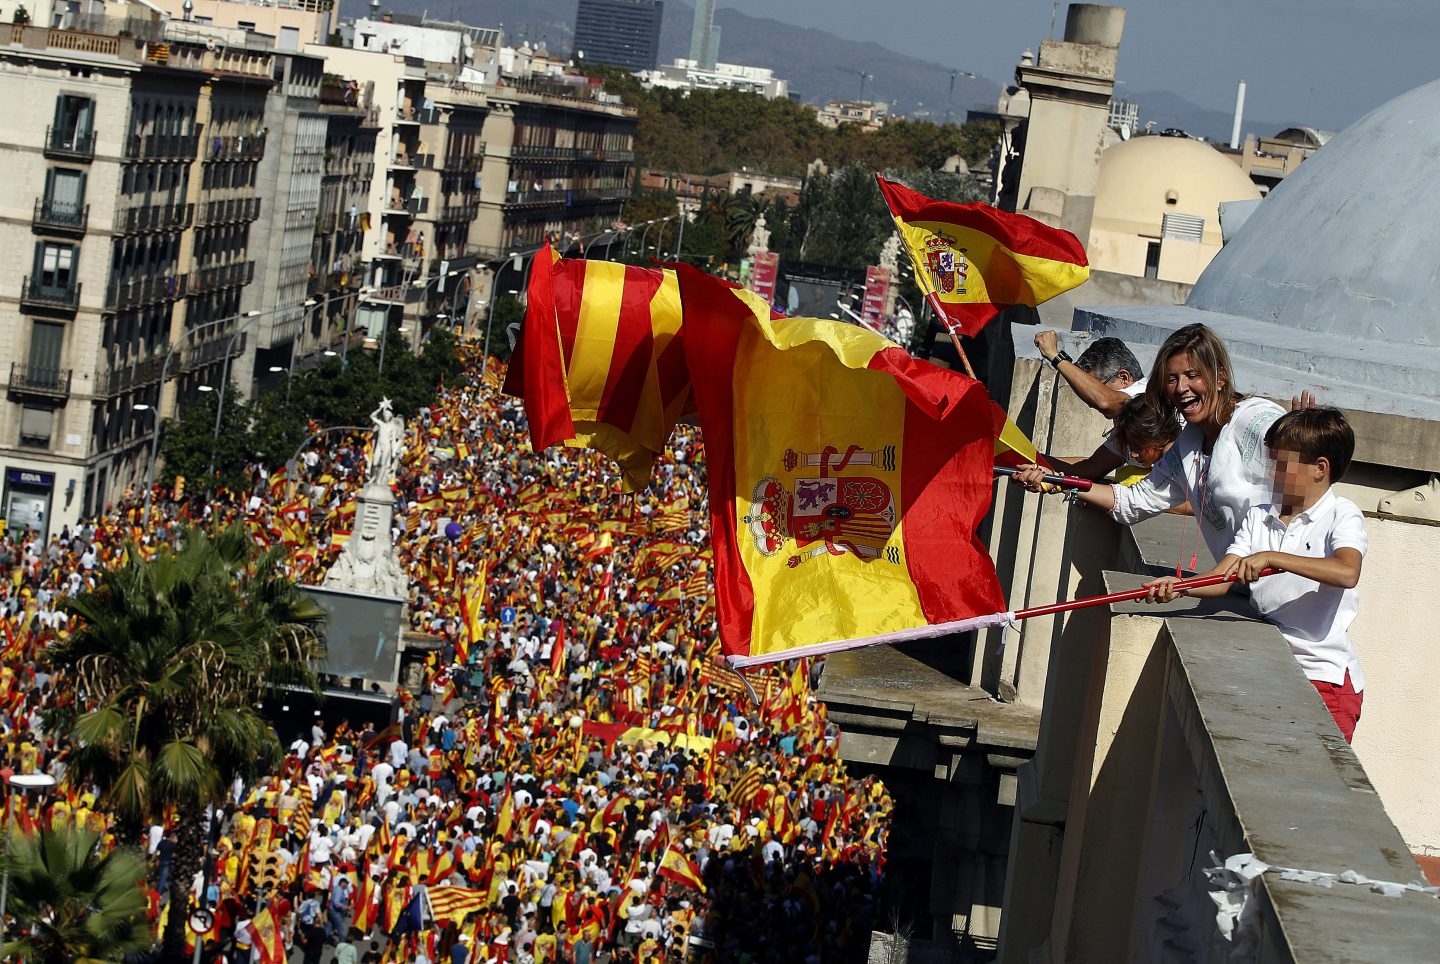 El PP quiere volver a llenar los balcones de banderas de España por el 12-O